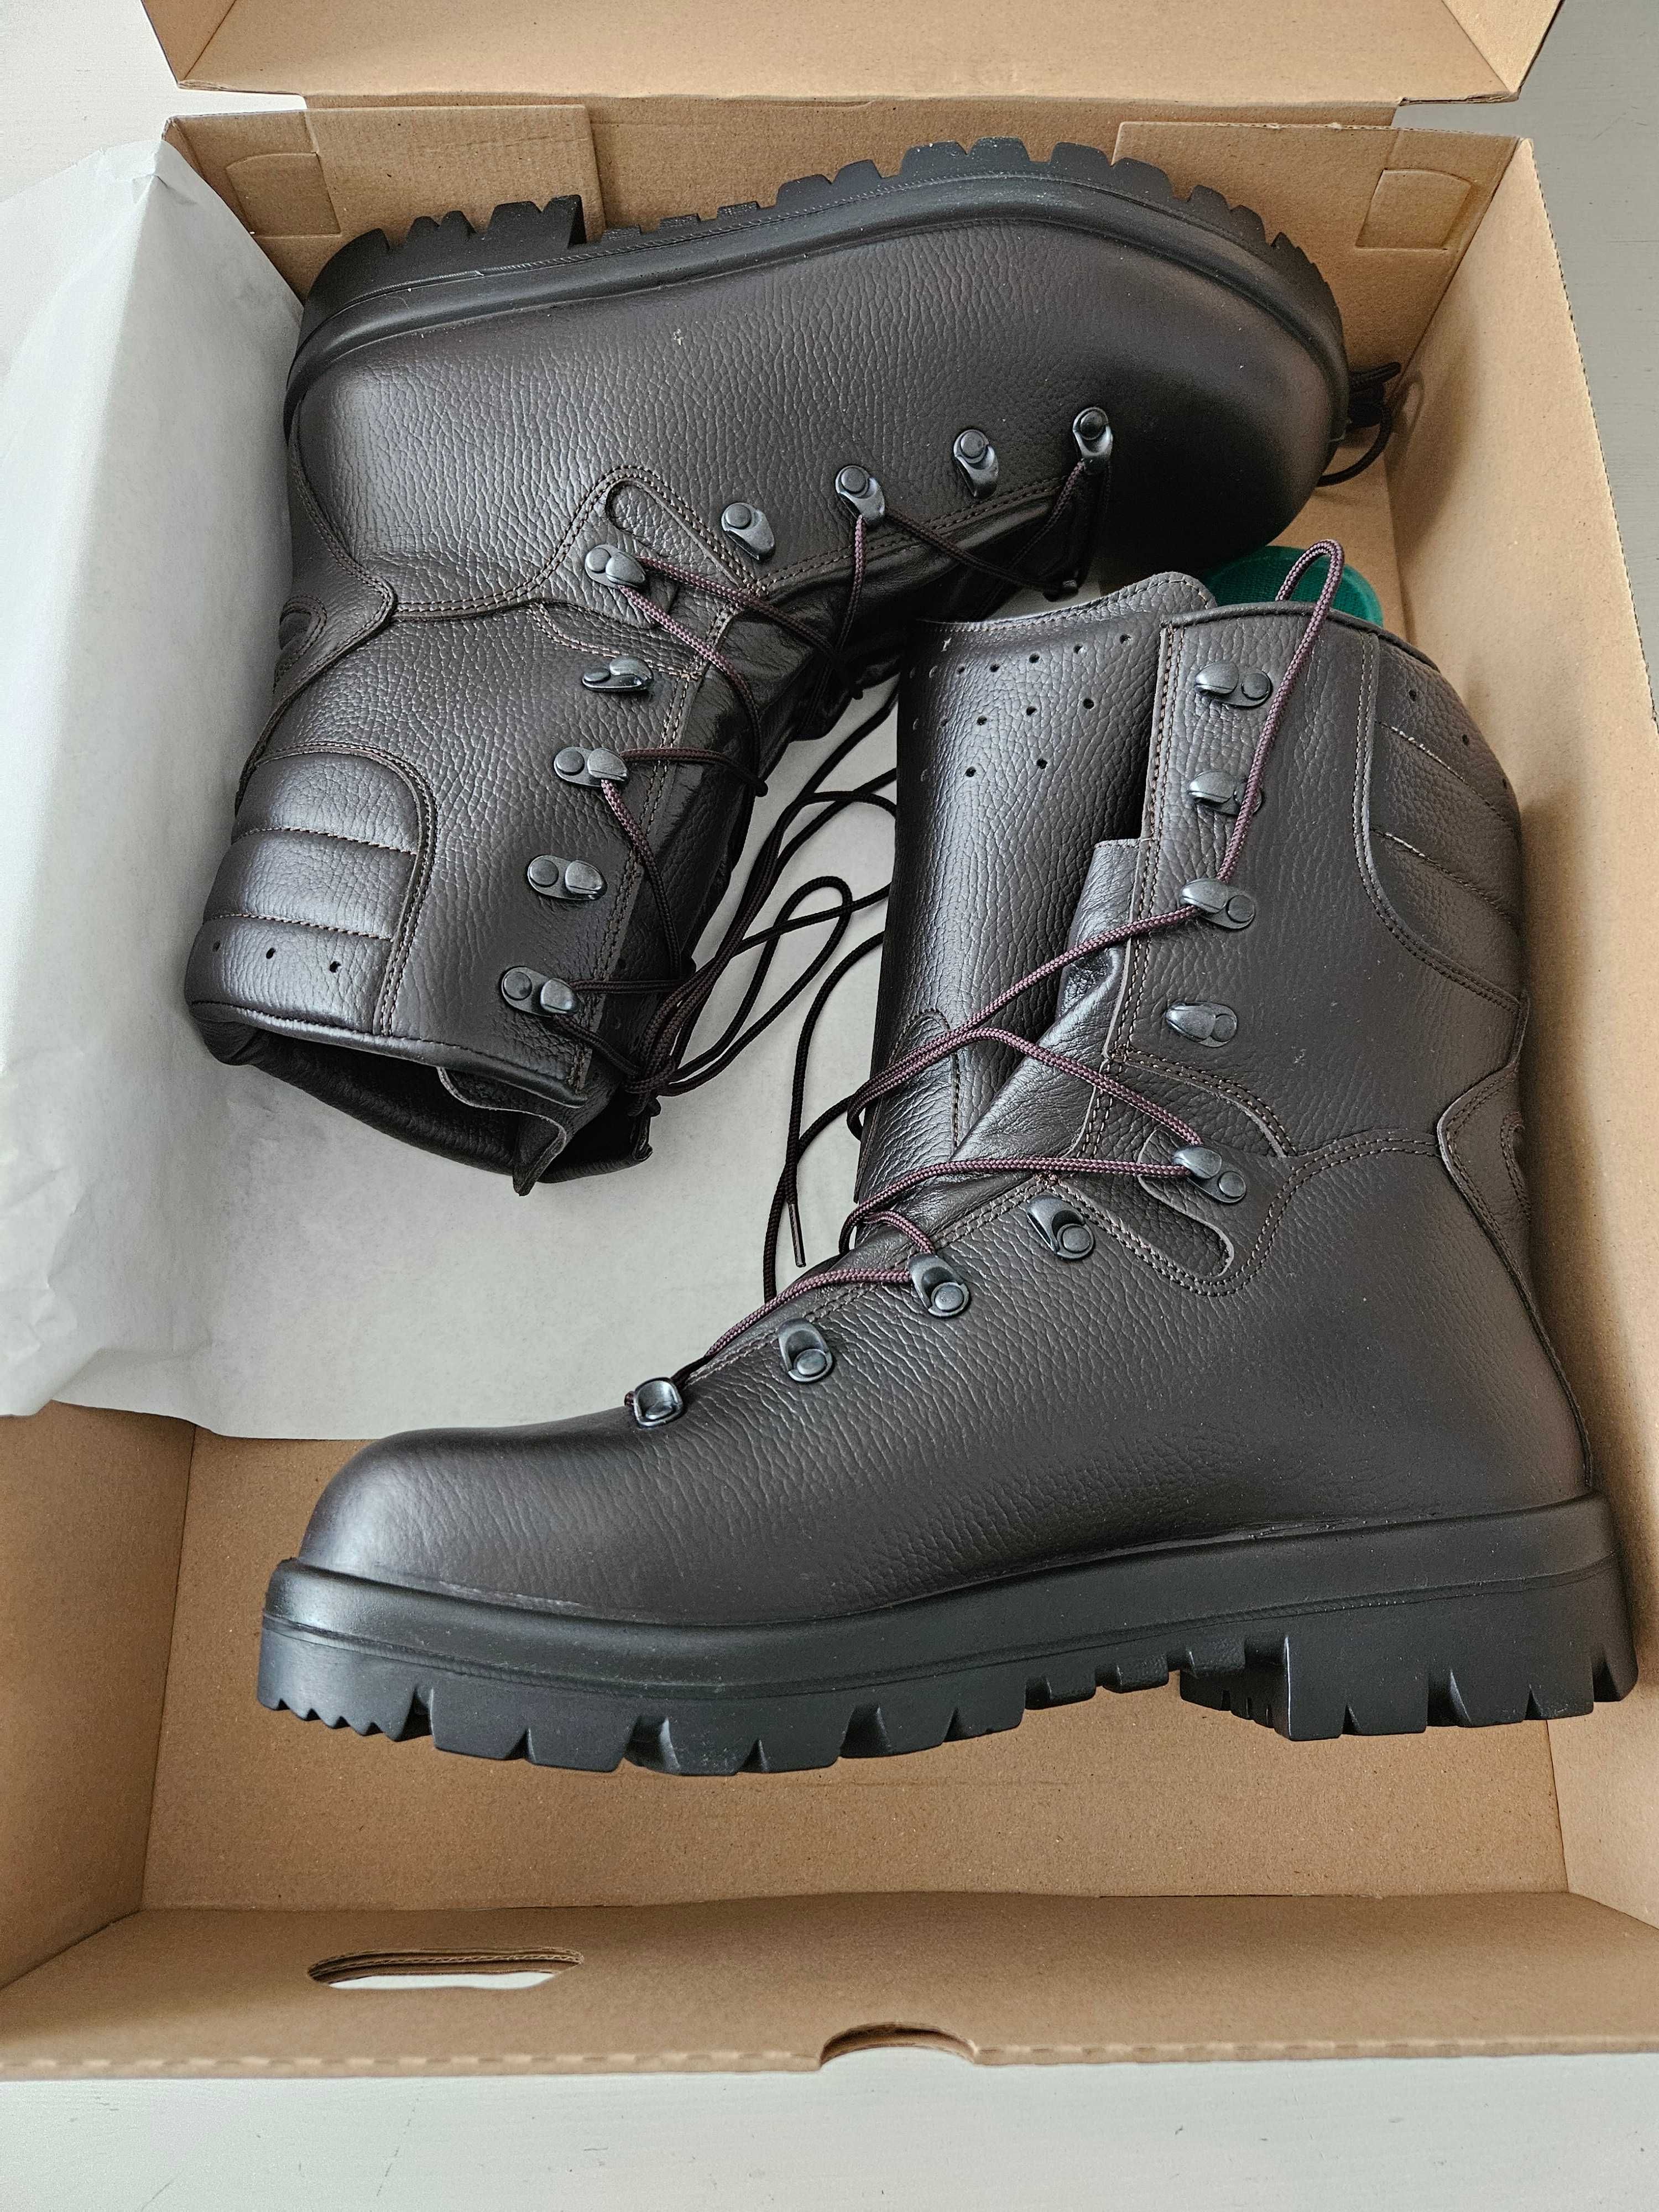 Buty zimowe wojskowe - trzewiki zimowe wzór 933A/MON - rozmiar 29,5